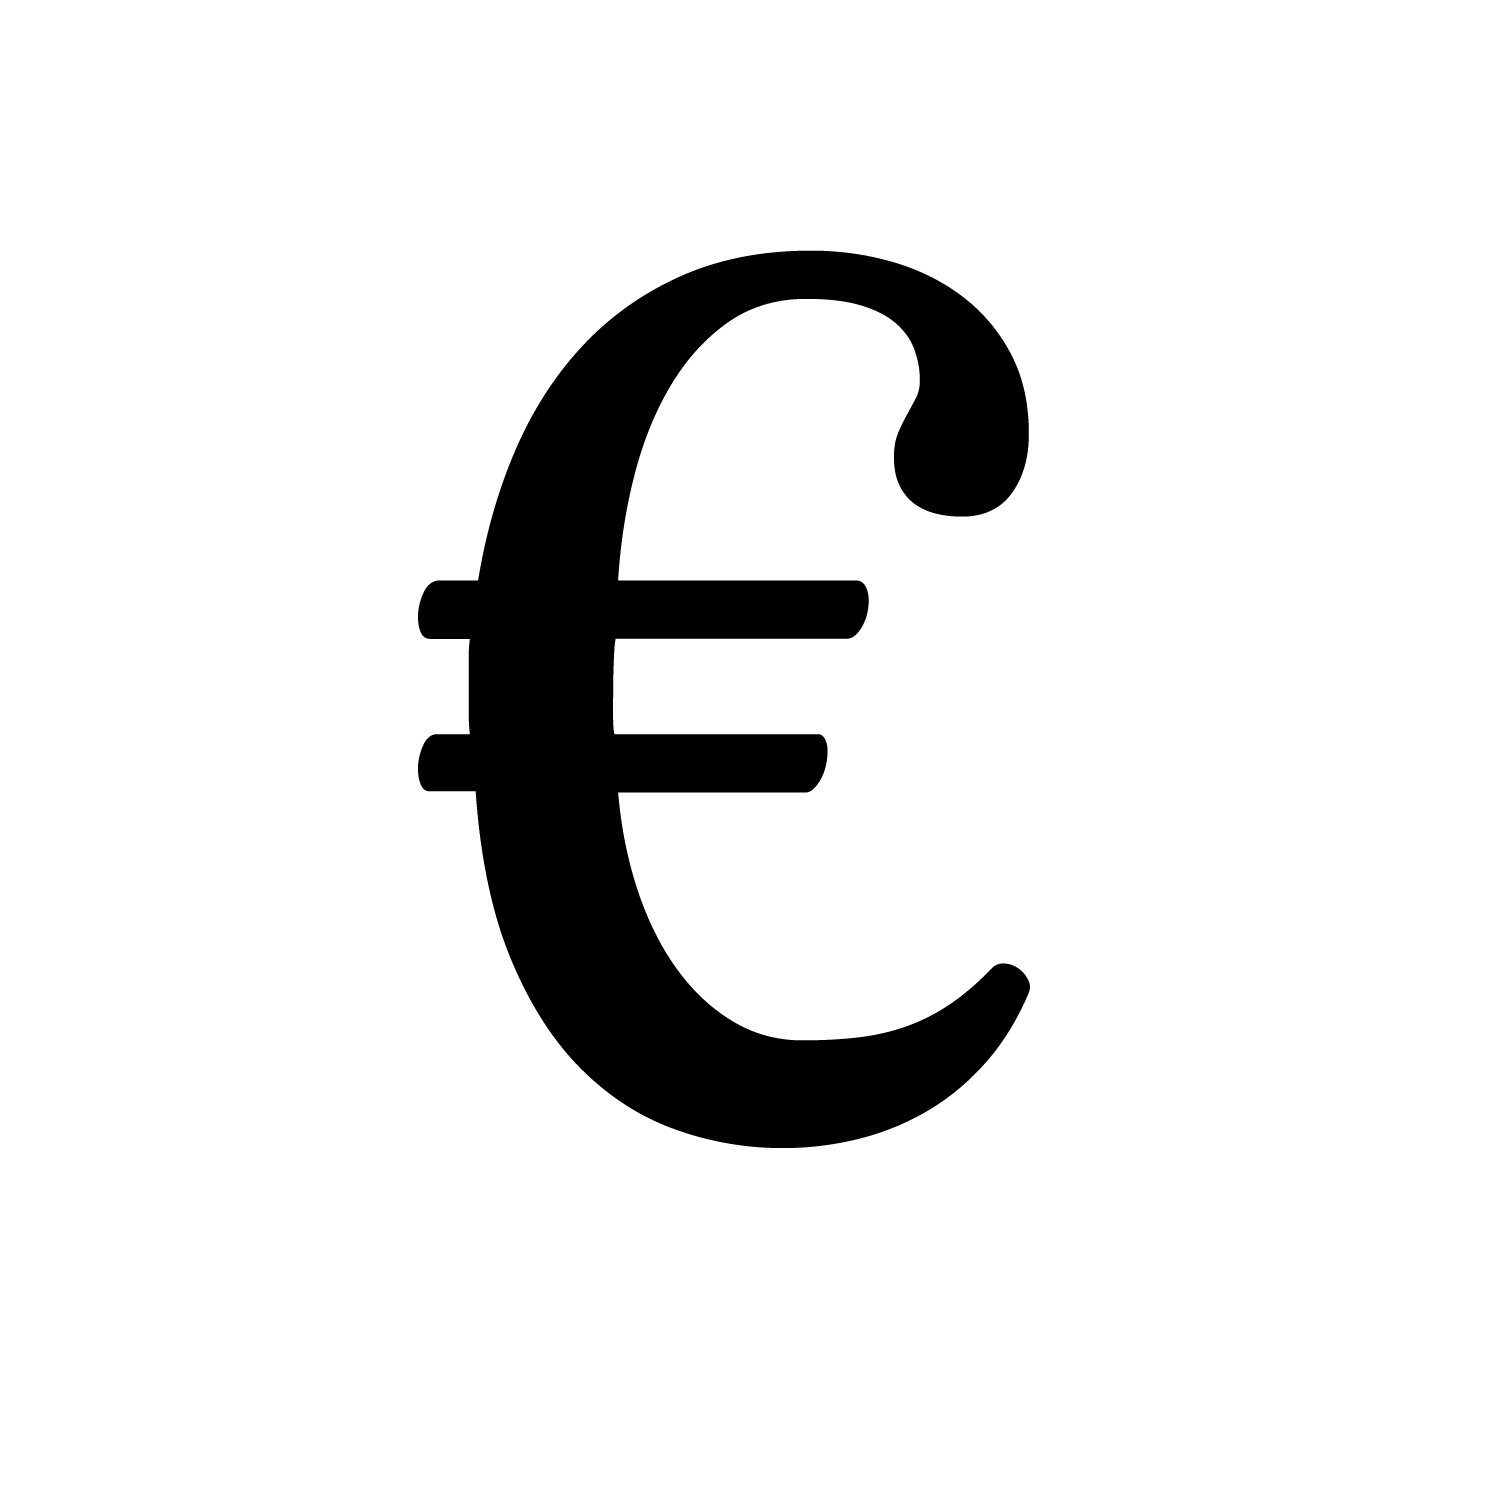 Euro logo PNG